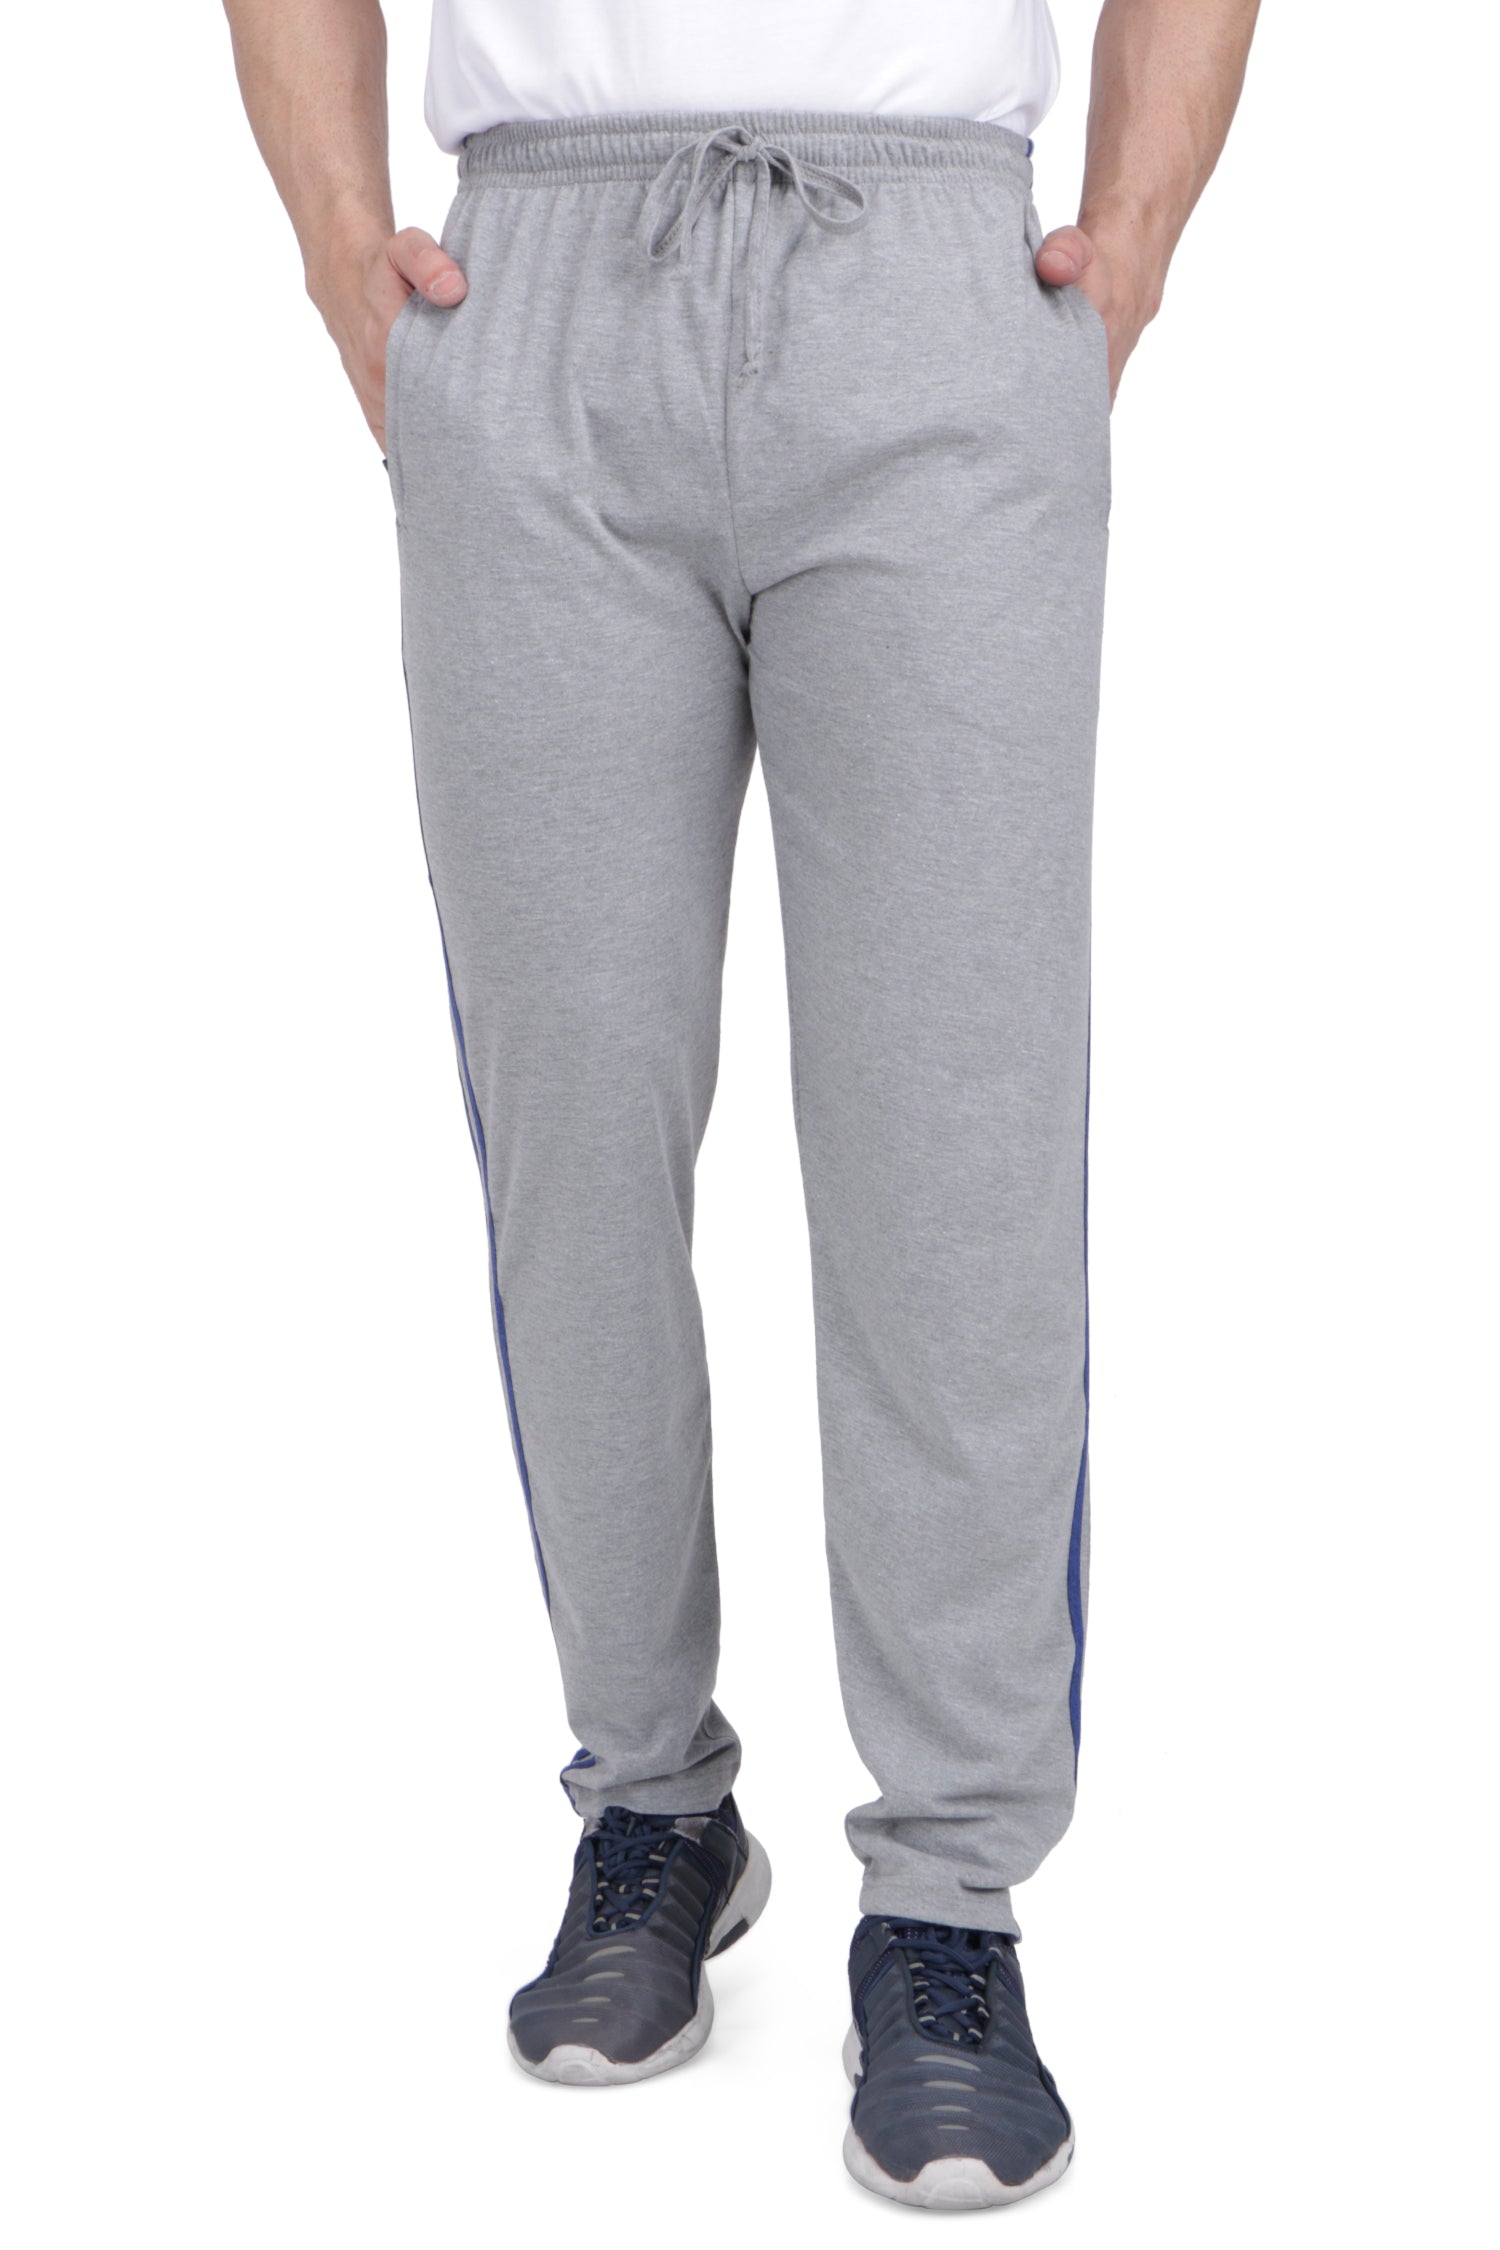 NS Lycra (Laser Cut) Athletic Slim Fit Track Pants|Sportswear Bottom Wear  for Men|